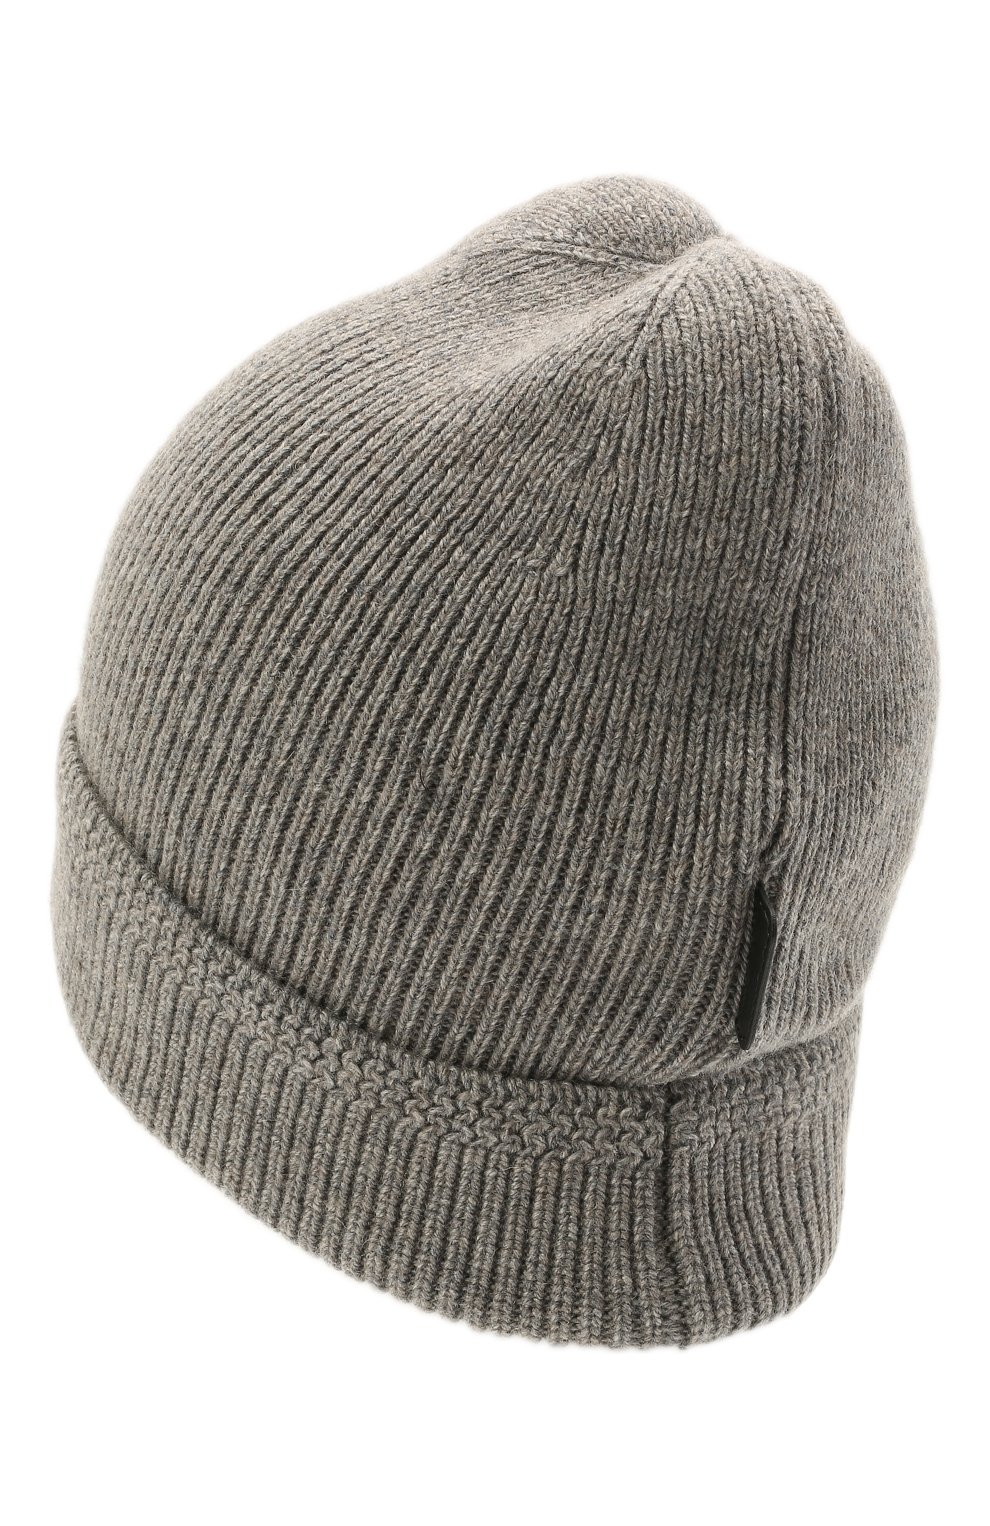 Мужская серая кашемировая шапка TOM FORD купить в интернет-магазине ЦУМ